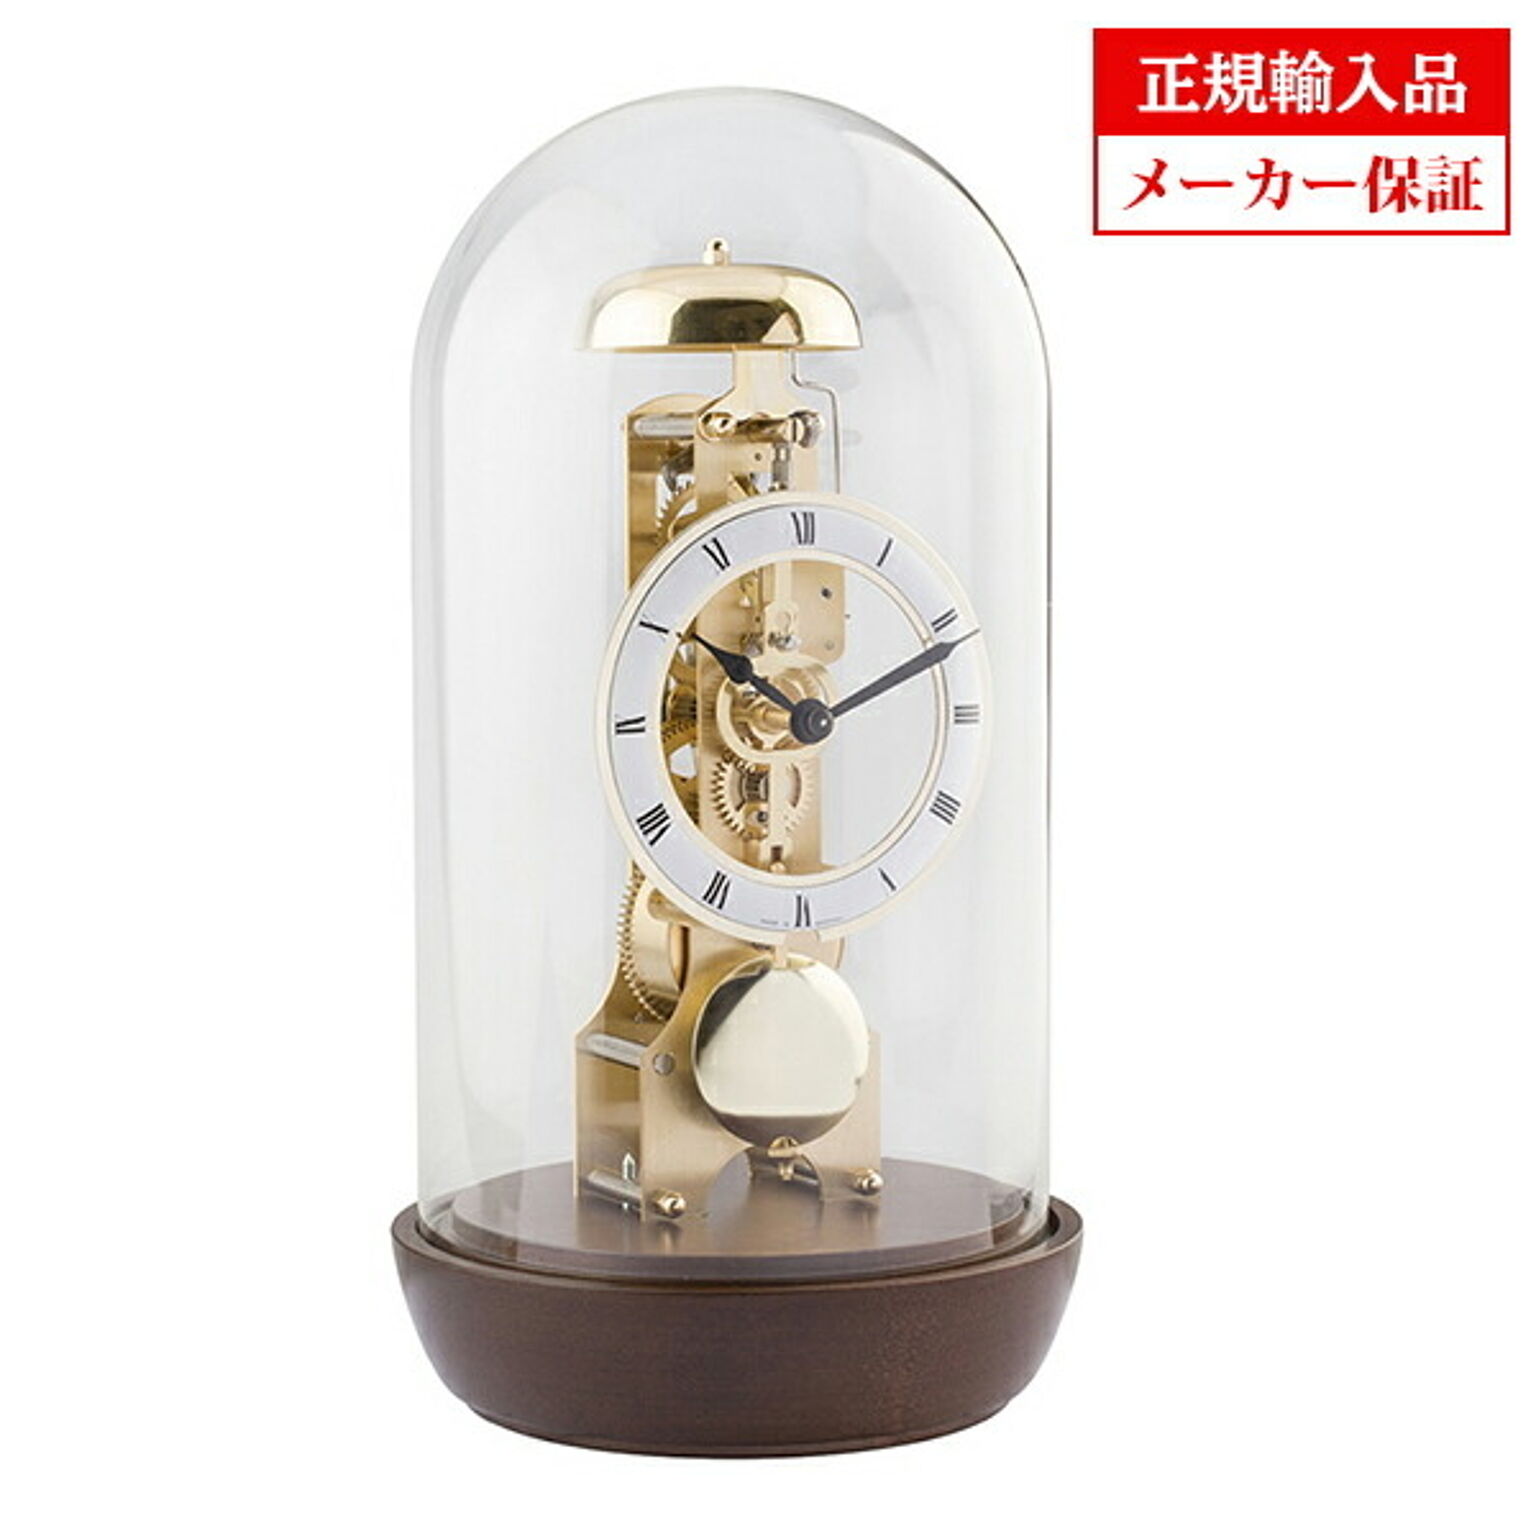 ヘルムレ HERMLE 23018-030791 置き時計 真鍮14日巻きスケルトン機械式ムーブメント